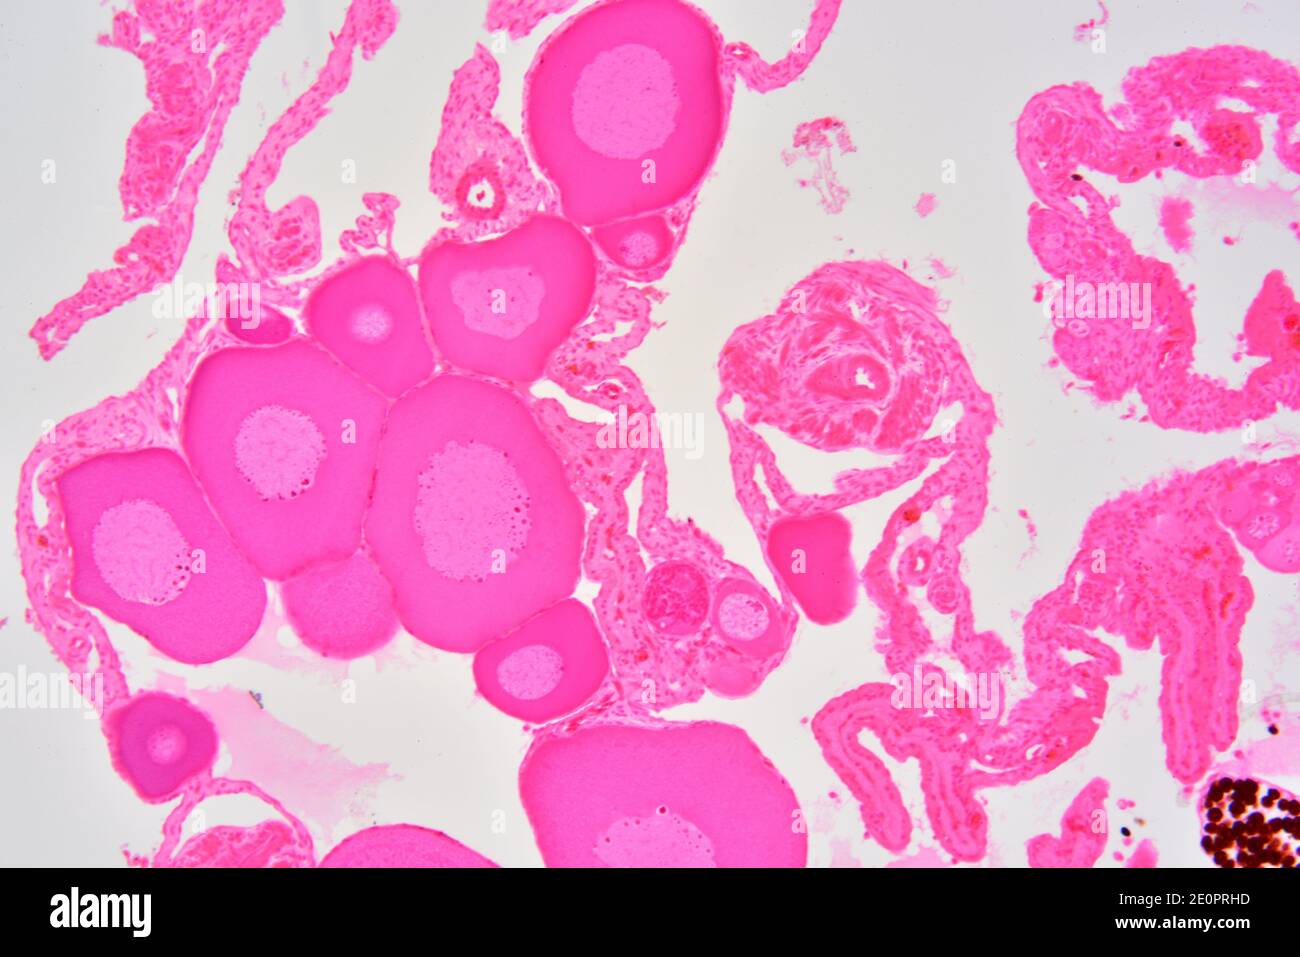 Ovaia di rana che mostra oogonie, oociti immaturi, oociti maturi, vescicole germinali e nucleoli. Fotomicrografo X75 con larghezza di 10 cm. Foto Stock